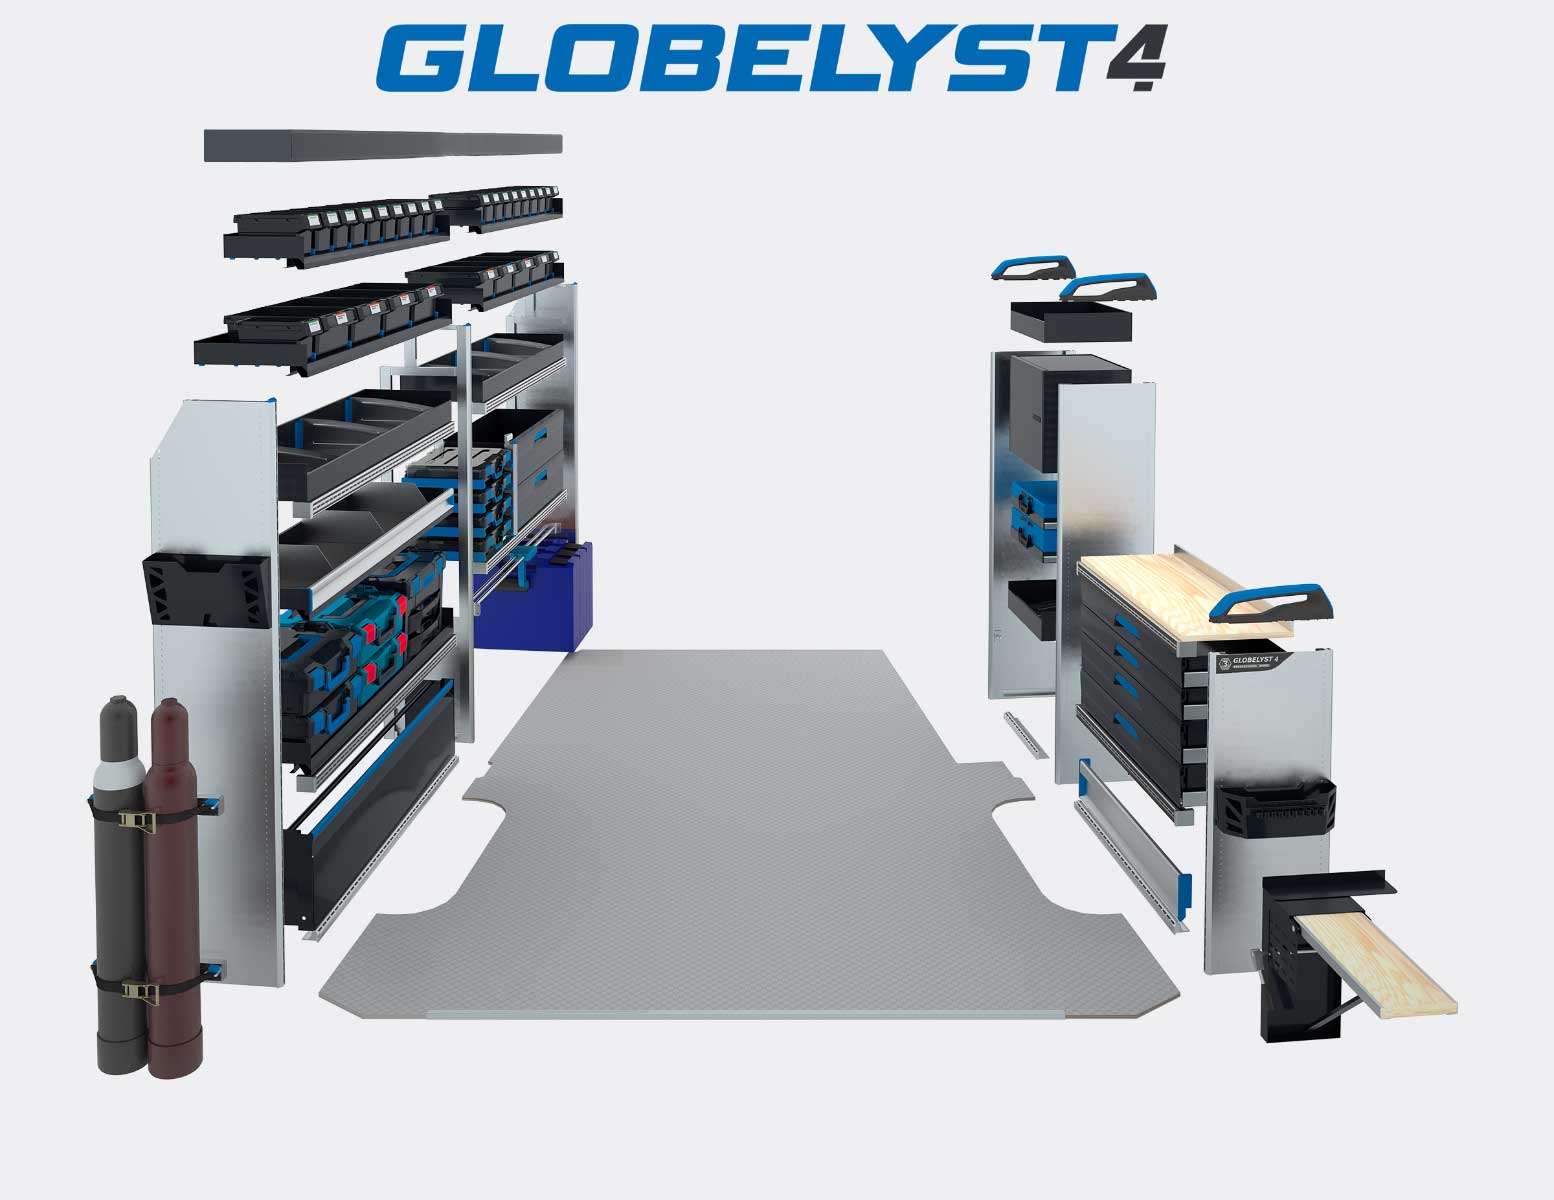 Fahrzeugeinrichtung-Sortimo-Globelyst-4-Explosionszeichnungopt